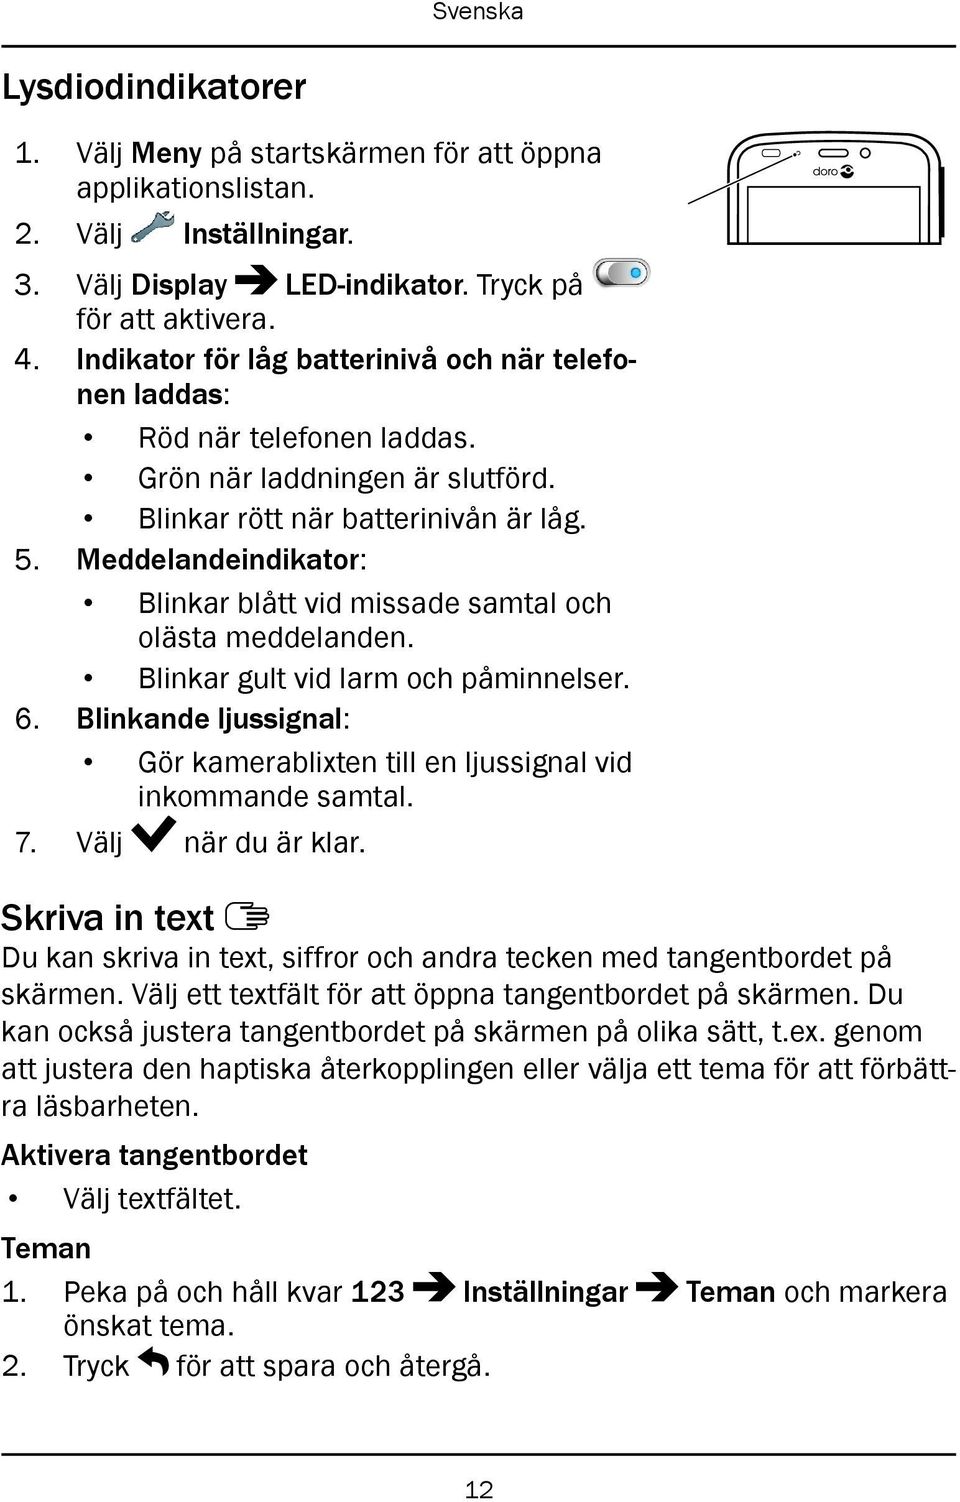 Doro Liberto 820. Svenska - PDF Gratis nedladdning